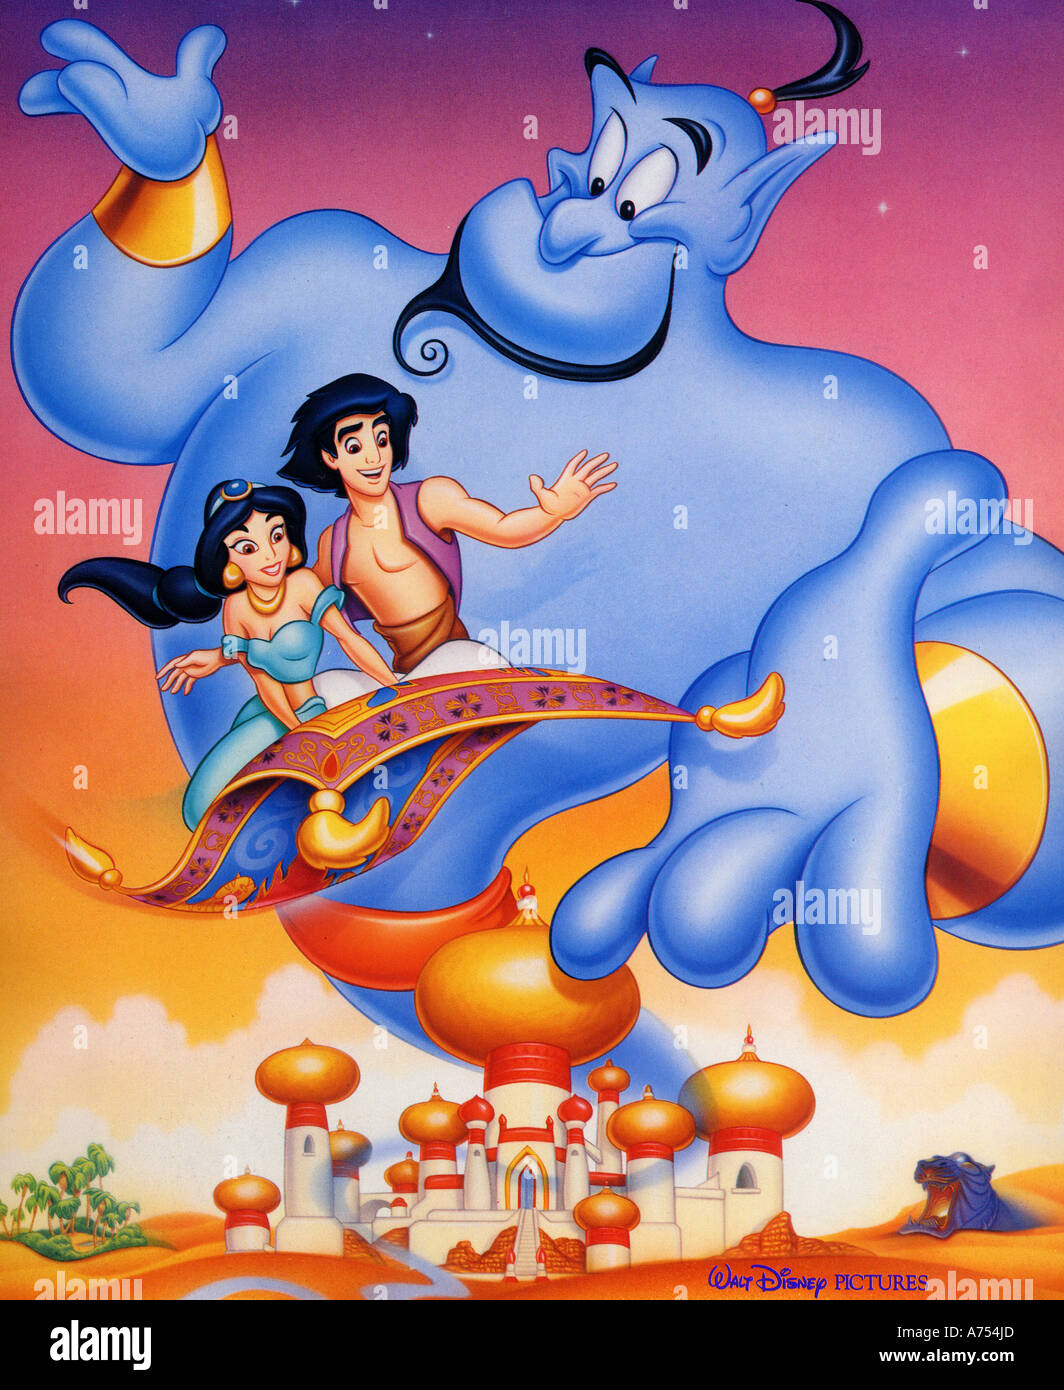 Aladdin fotografías e imágenes de alta resolución - Alamy